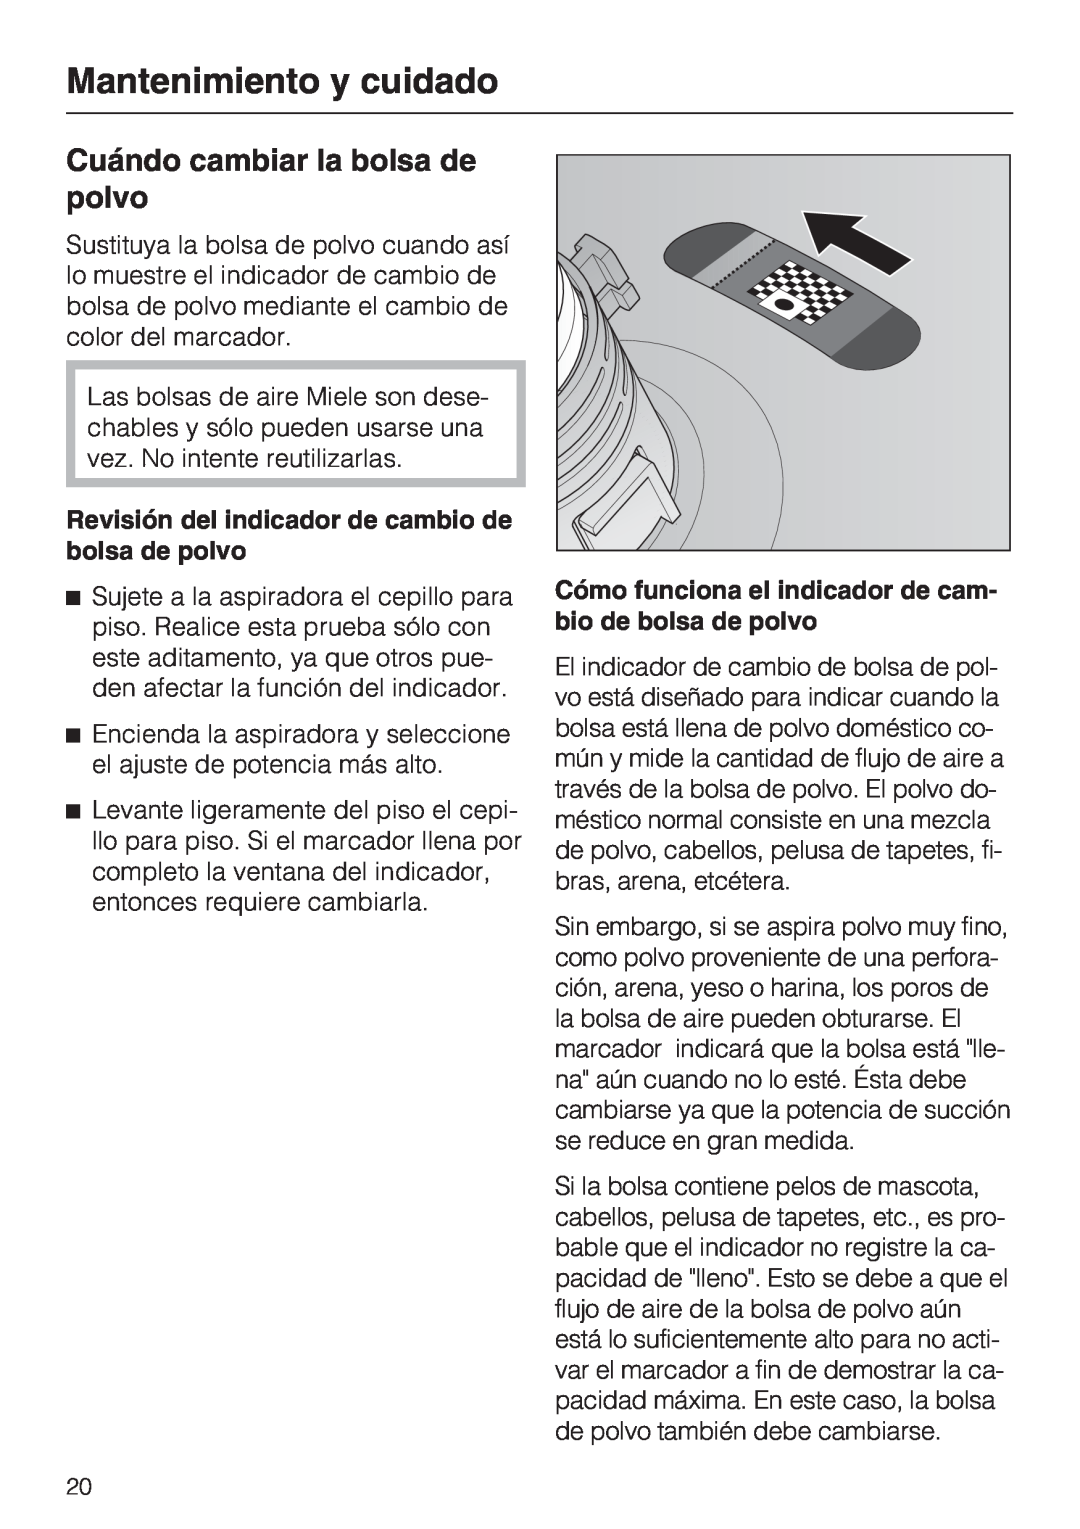 Miele S 2000 operating instructions Cuándo cambiar la bolsa de polvo, Mantenimiento y cuidado 